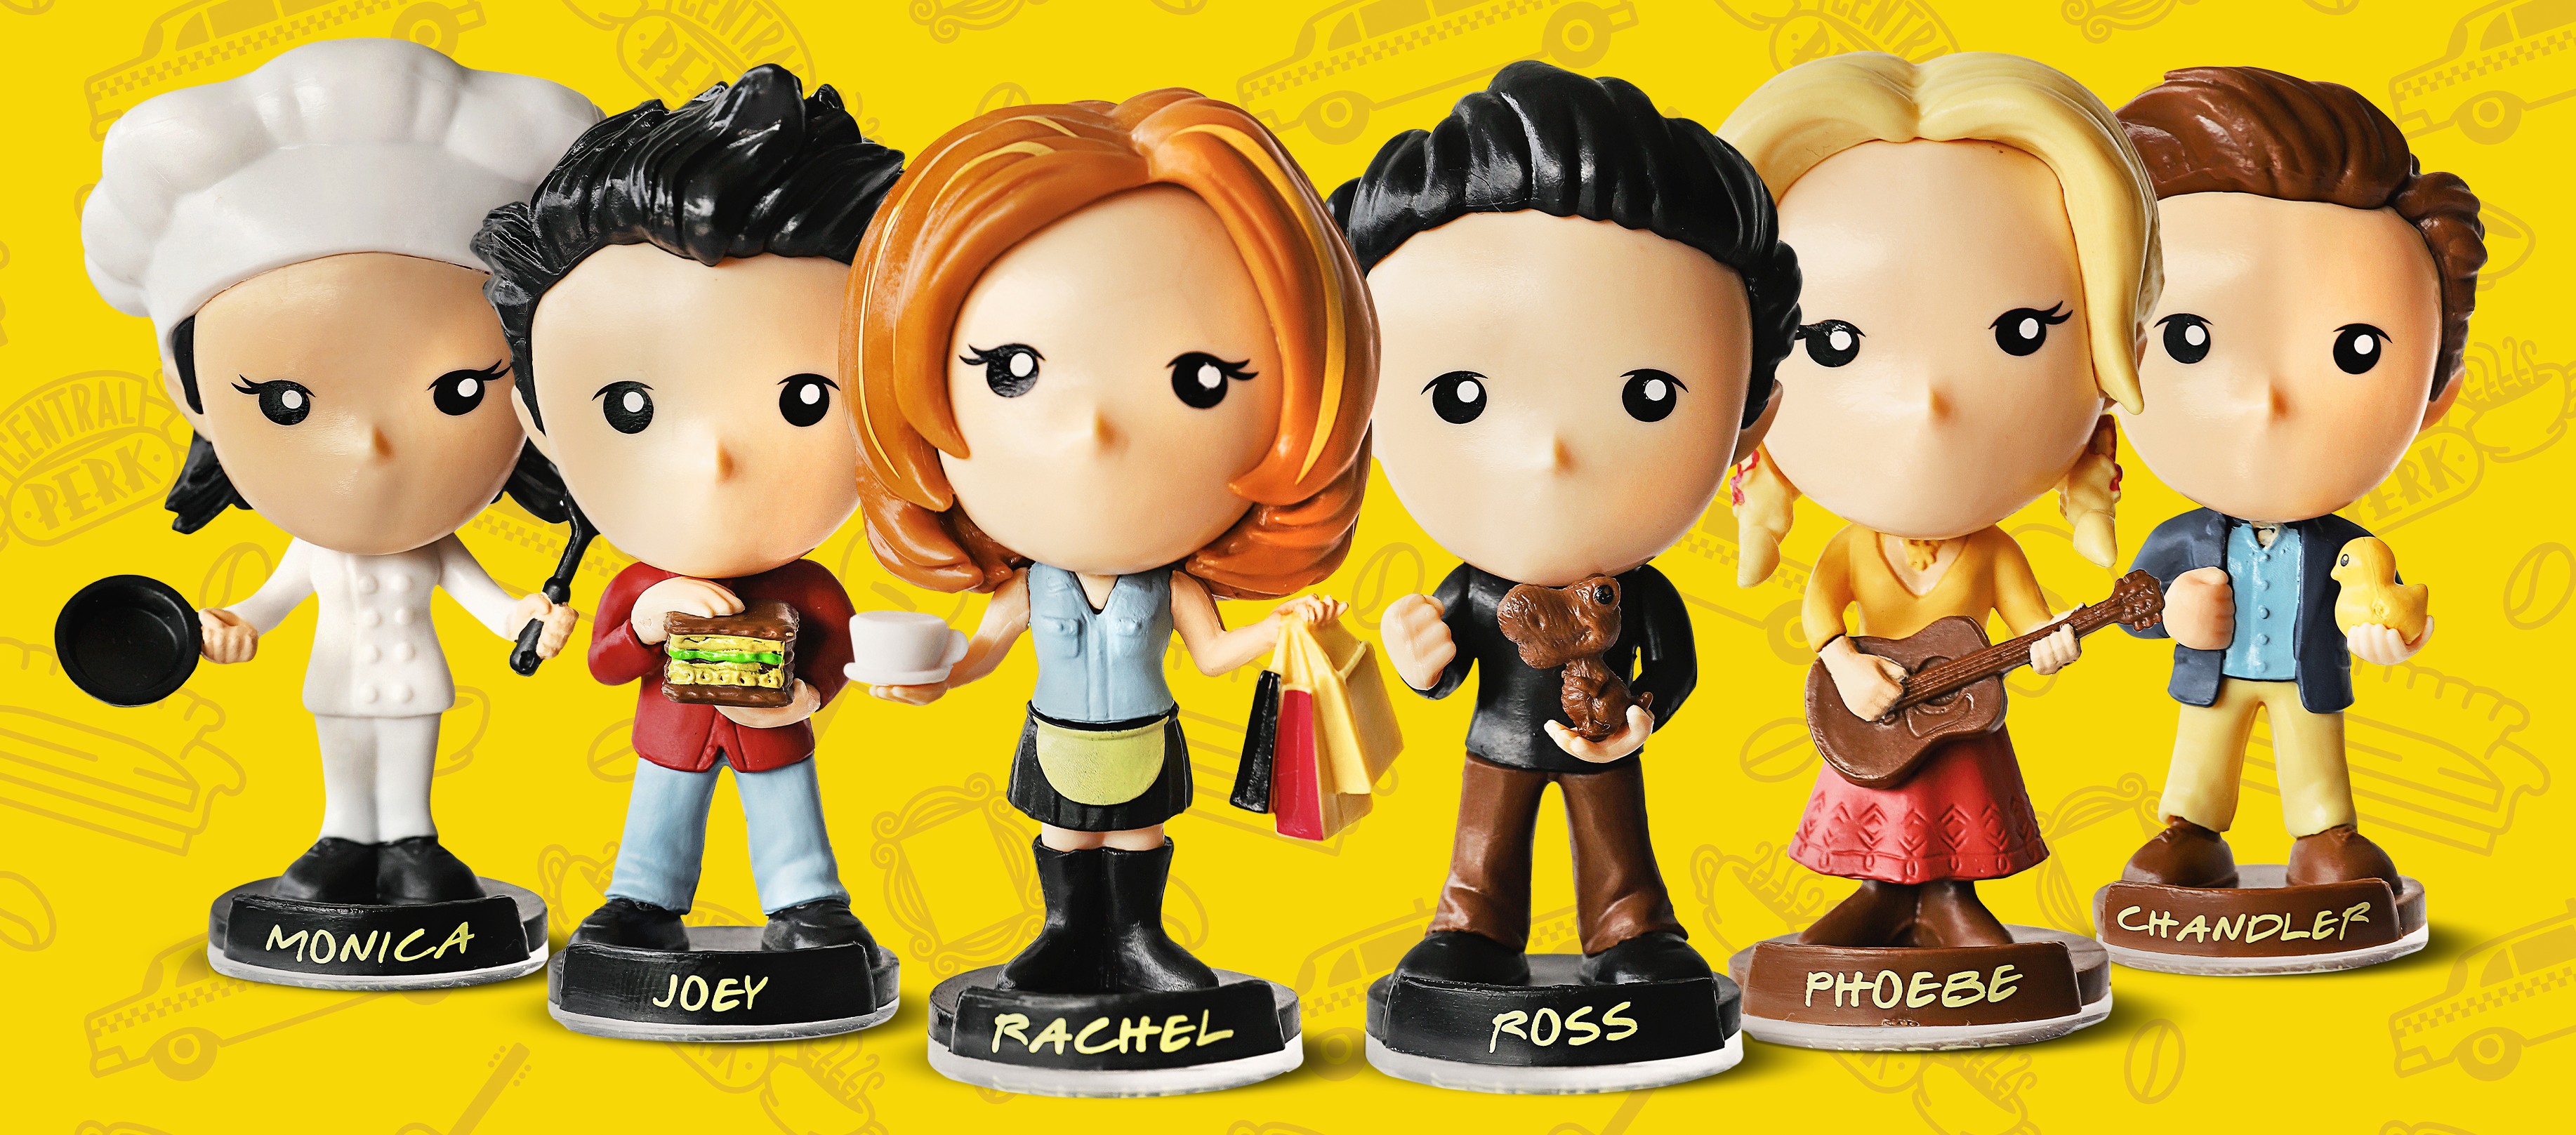 Friends vira tema de nova campanha do Bob’s com miniaturas de bonecos (Foto: Divulgação)